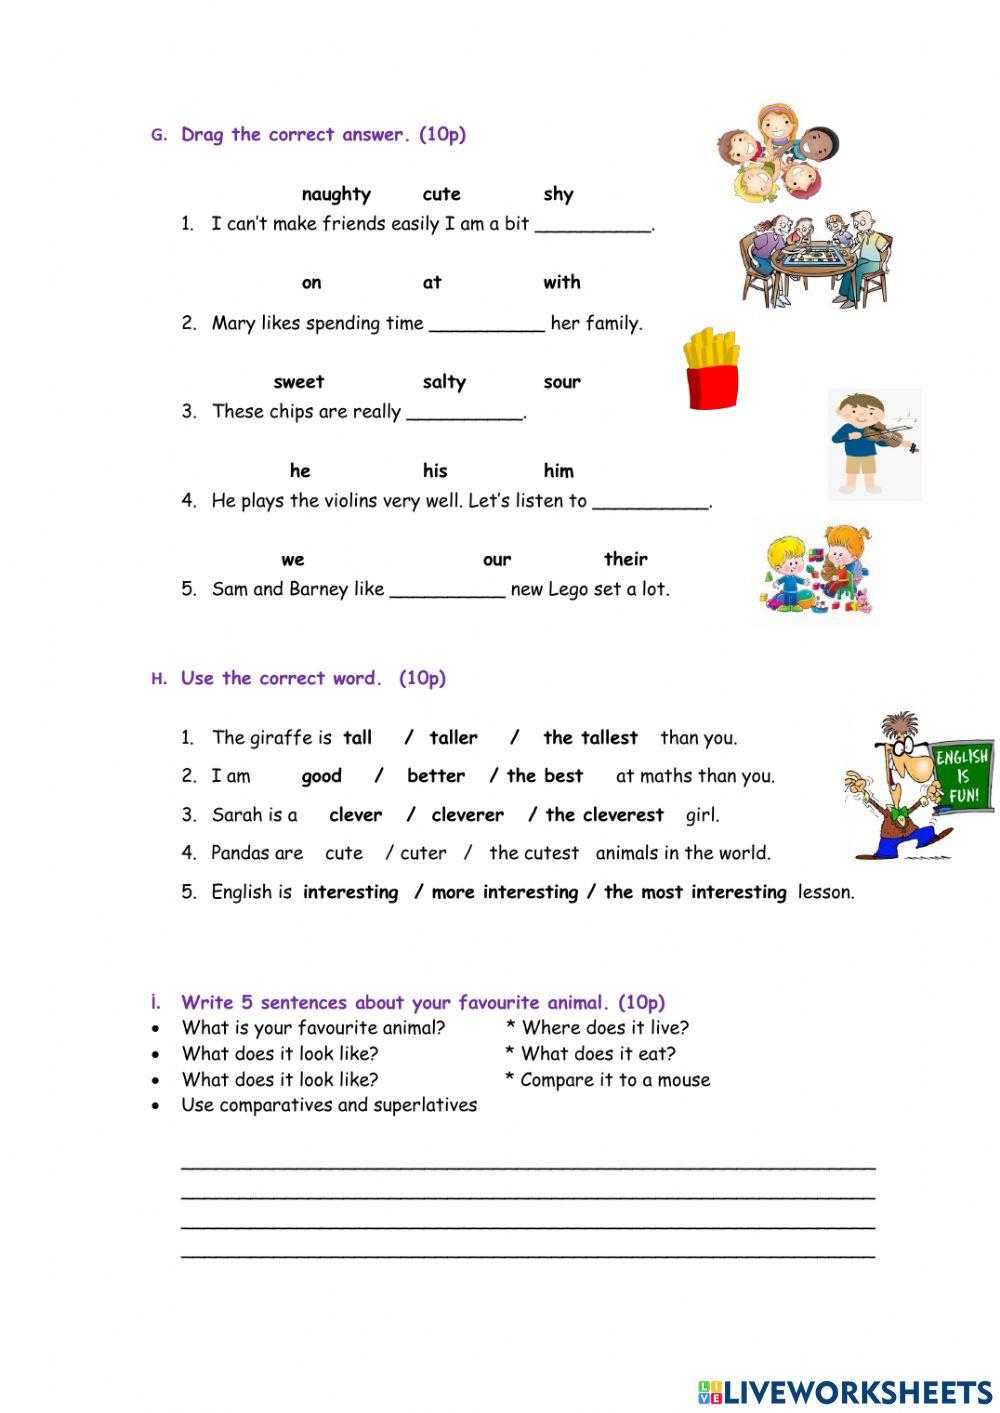 Level 3 summer practice quiz 3